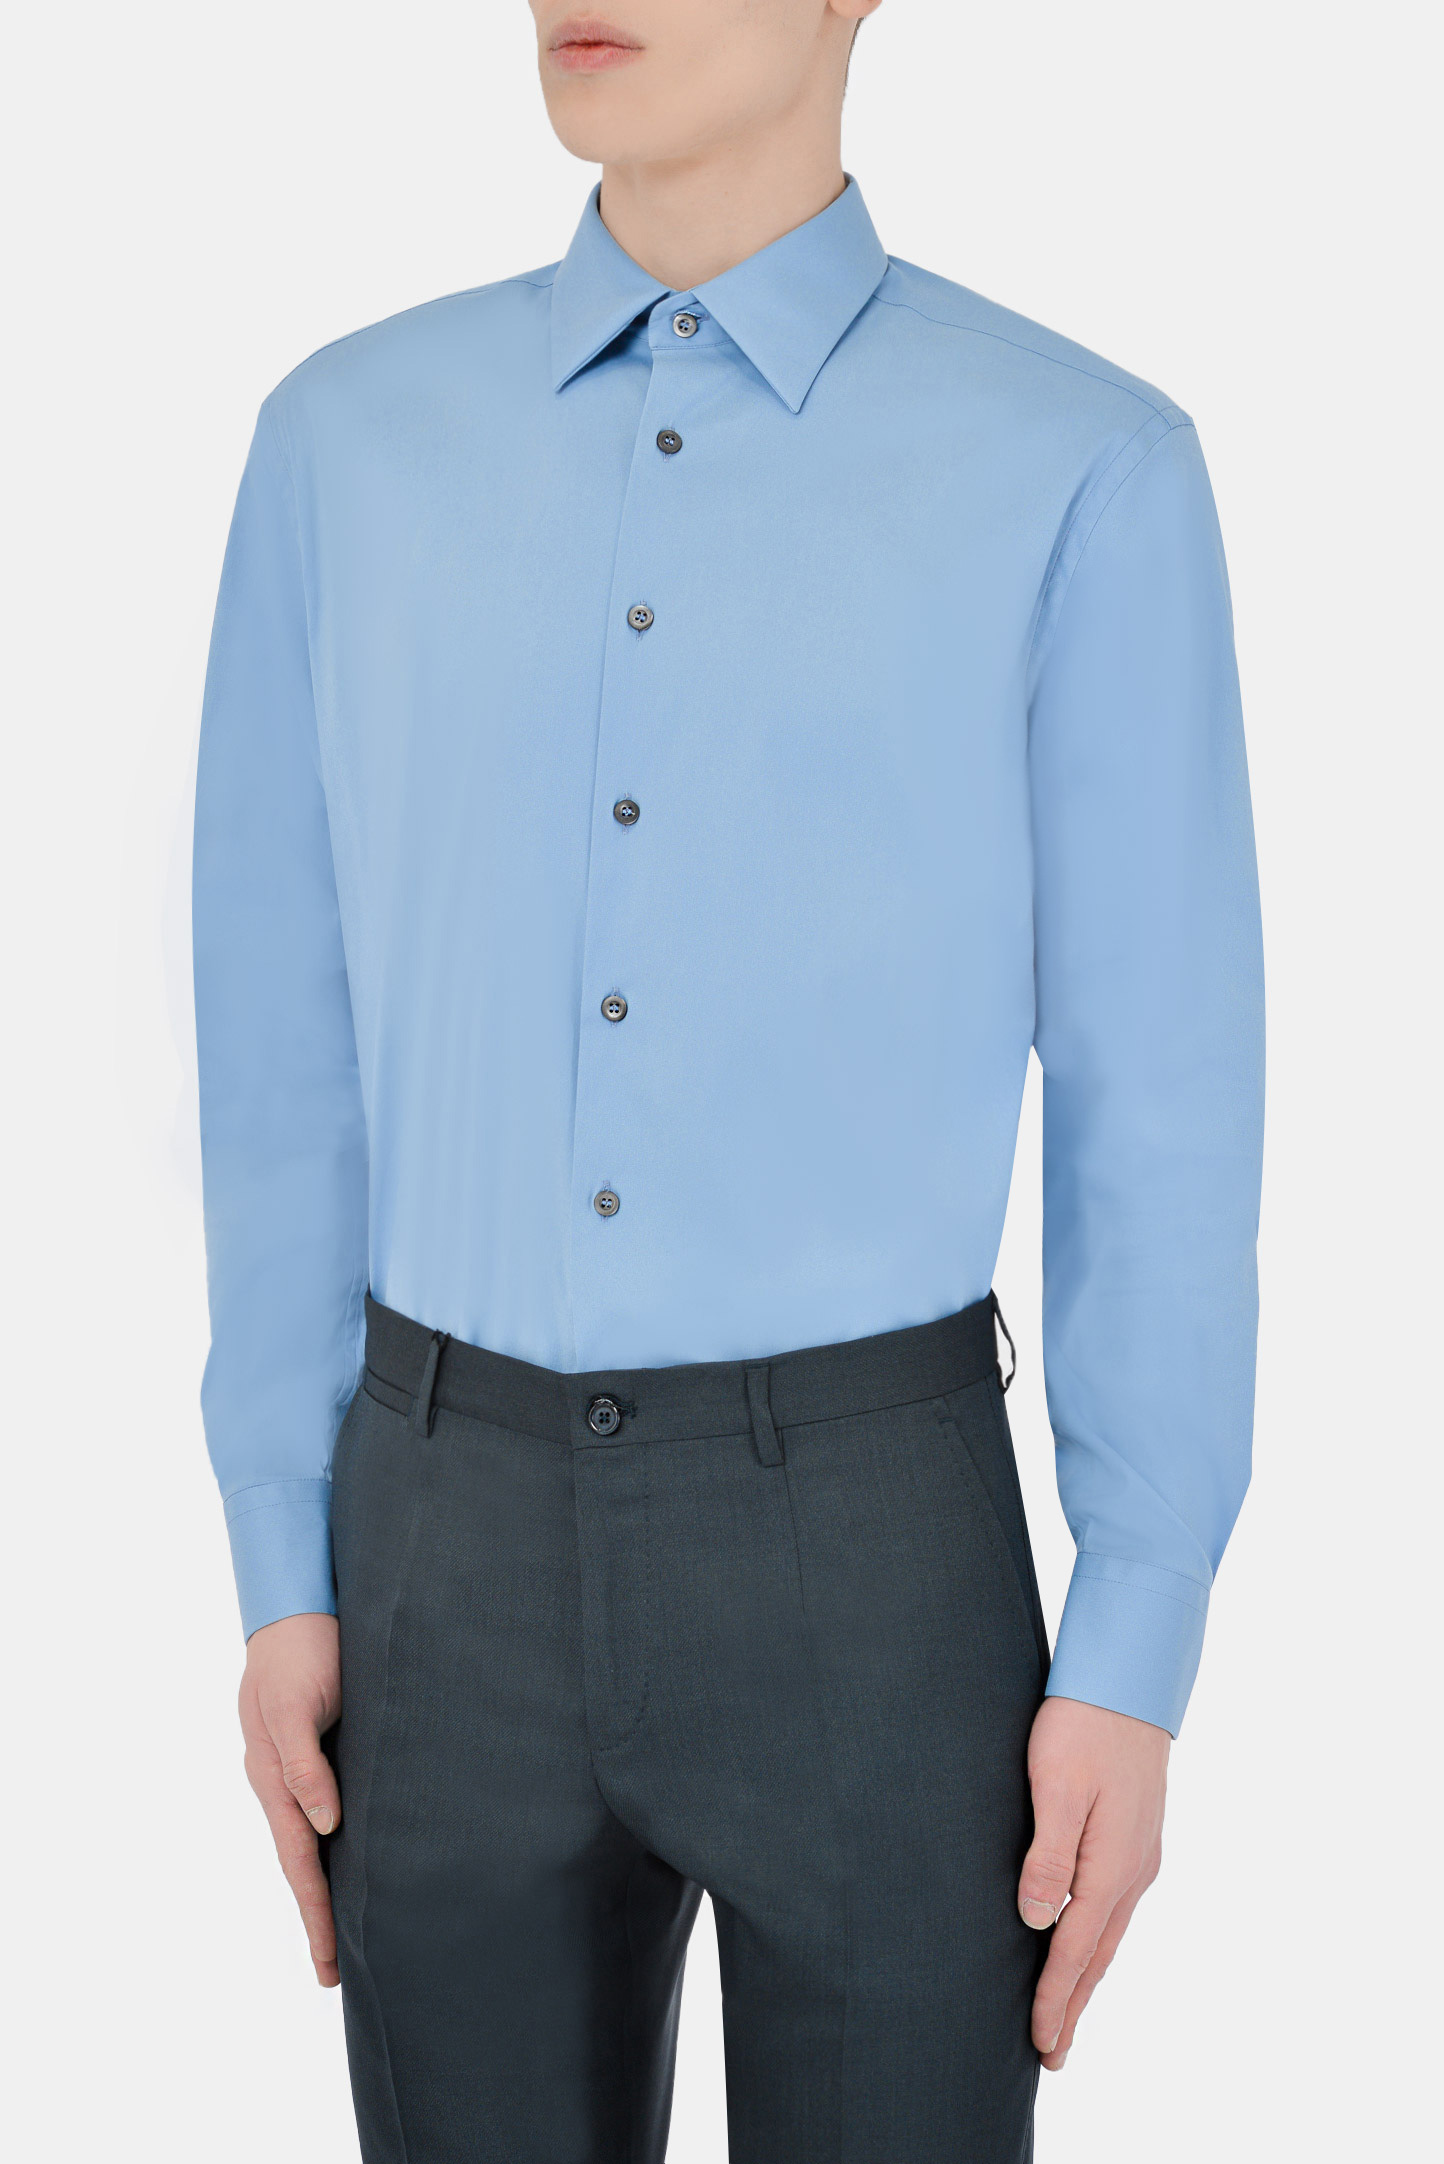 Рубашка PRADA UCM473 F62, цвет: Голубой, Мужской